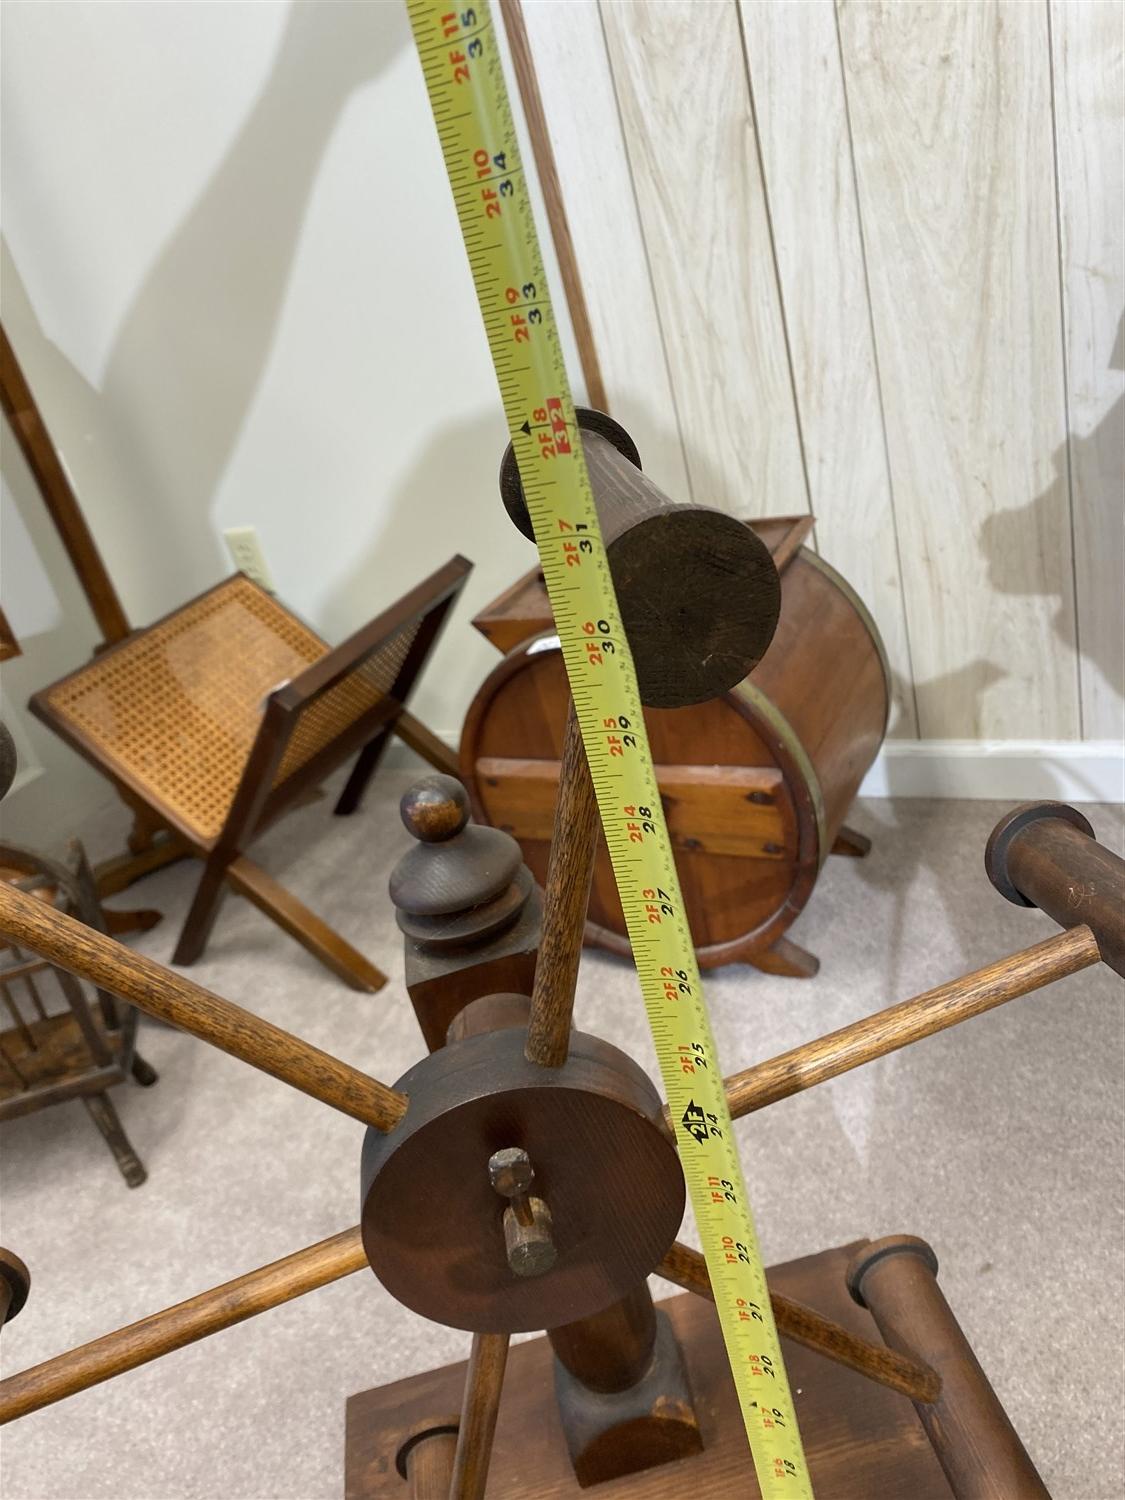 Vintage yarn winder, spinning wheel, inkle loom